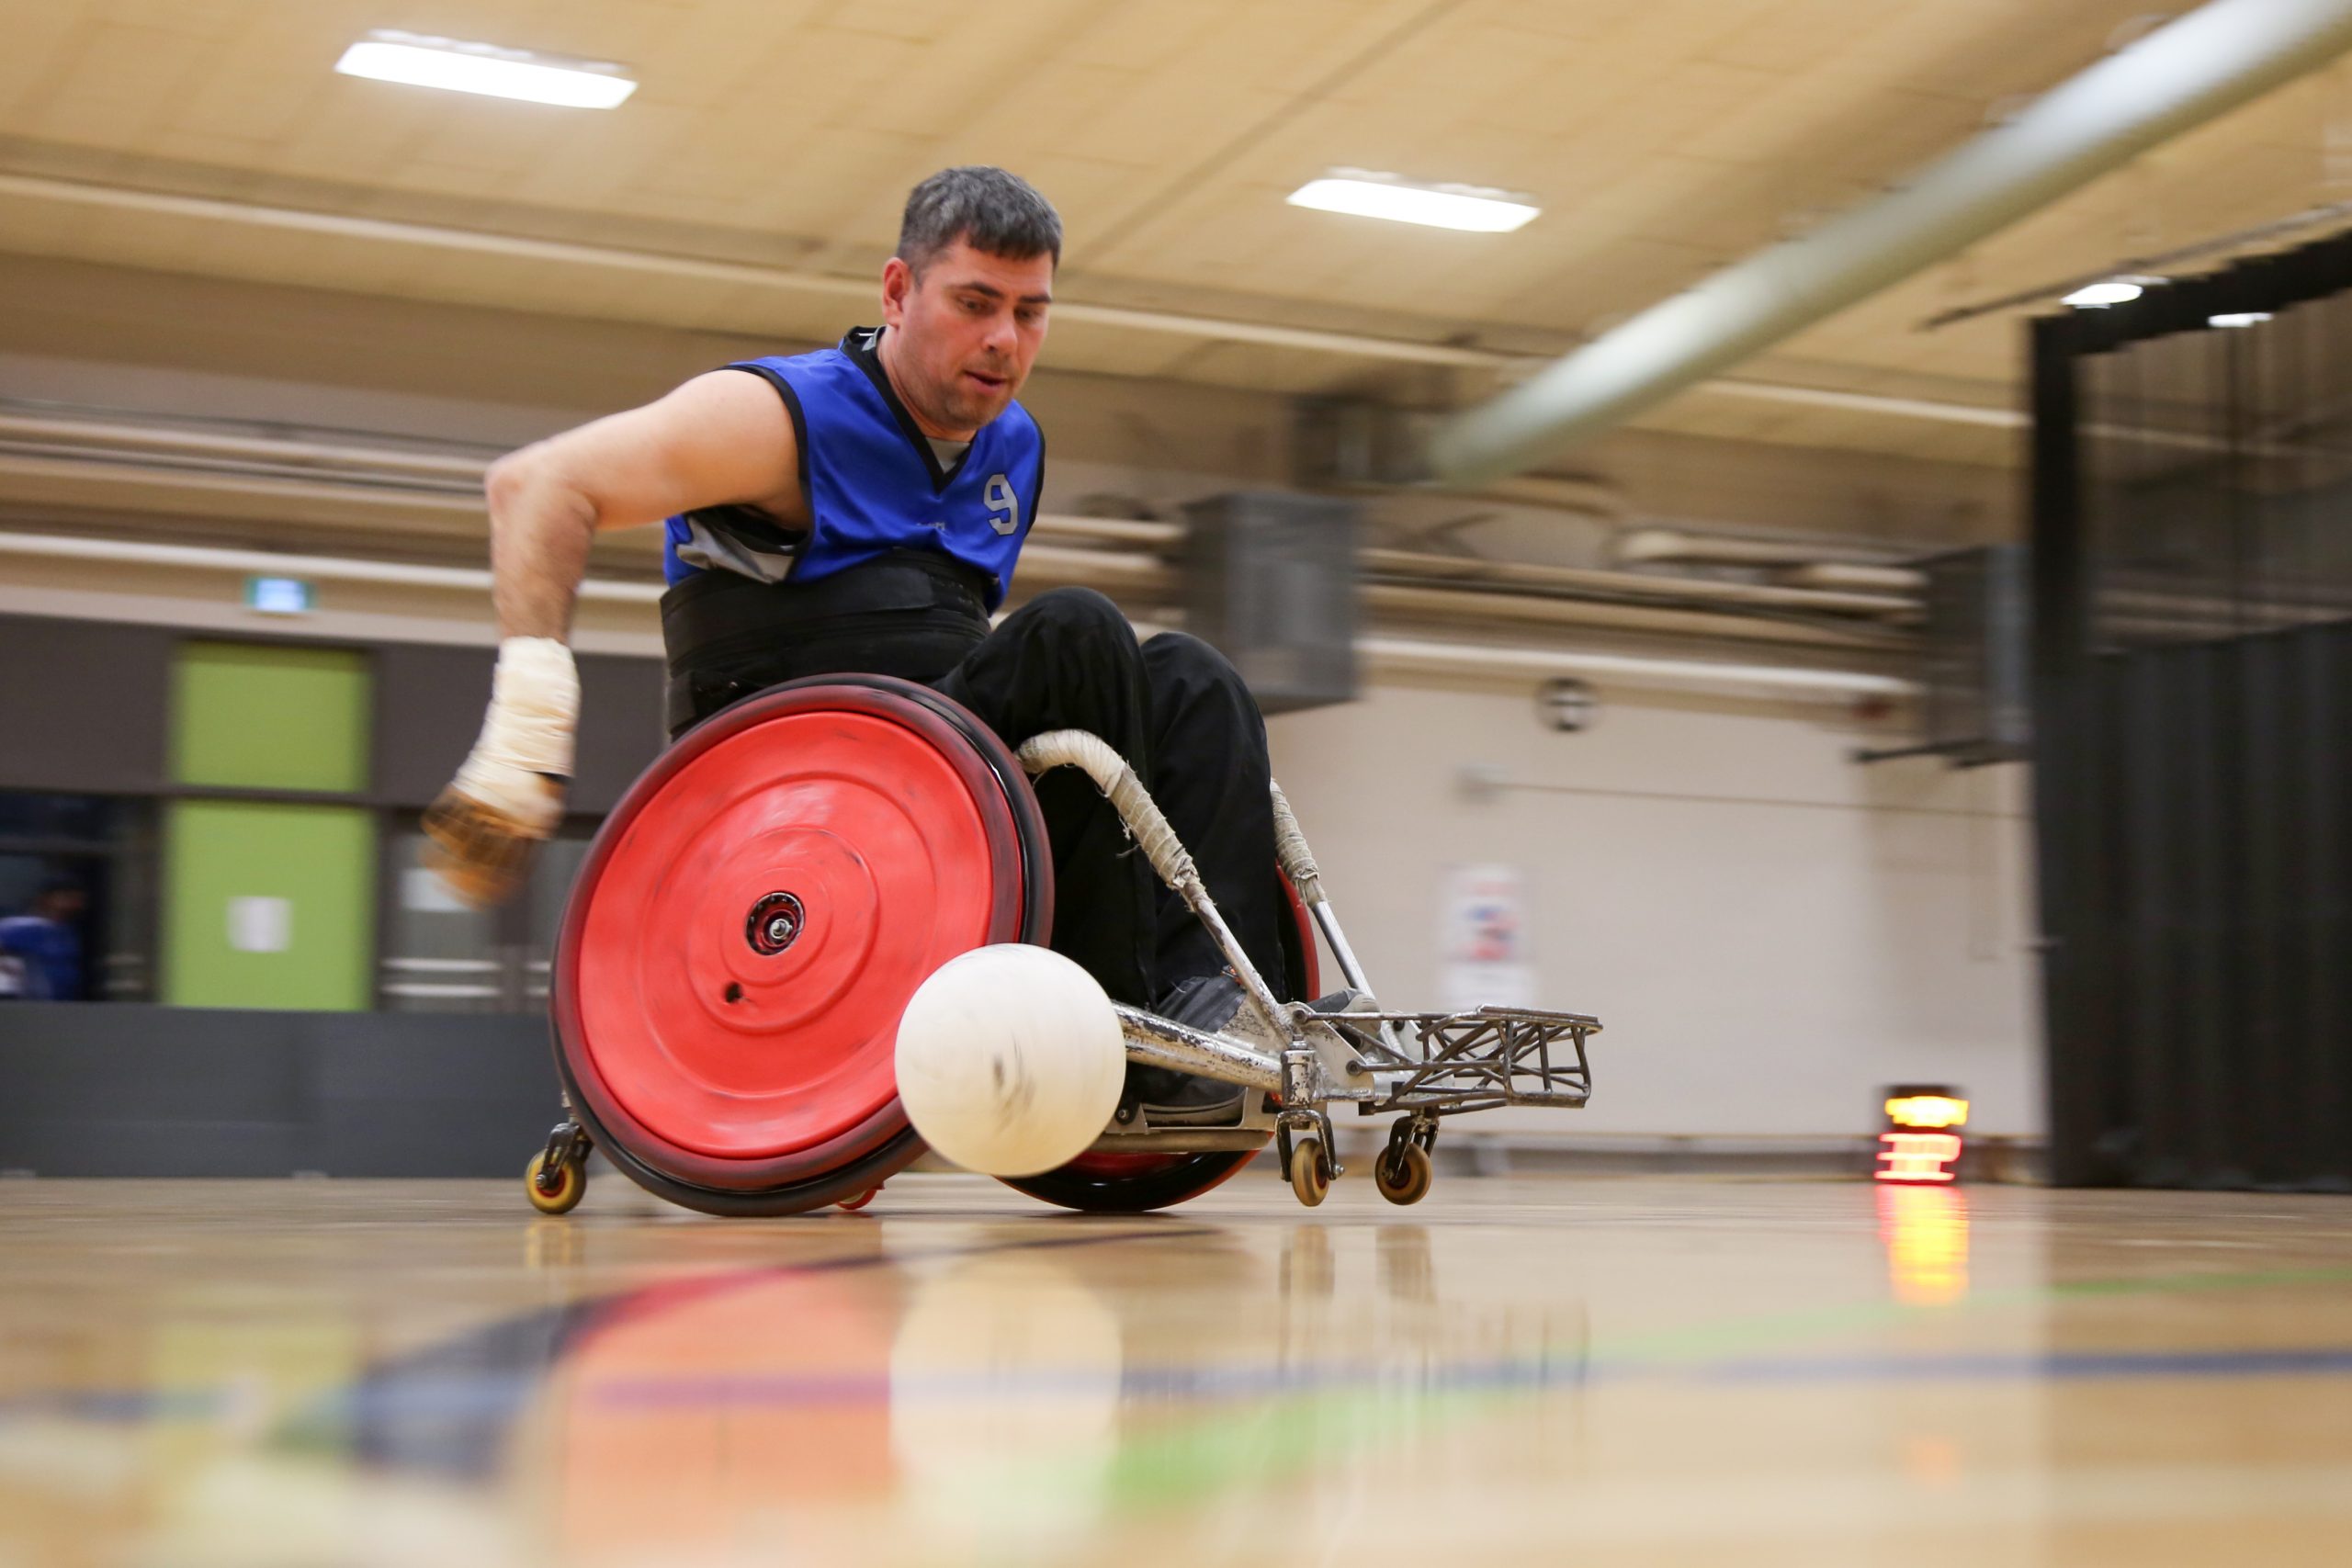 Description de l'image : Au centre, un athlète de rugby en fauteuil roulant regarde le ballon de rugby, qui est à sa droite.